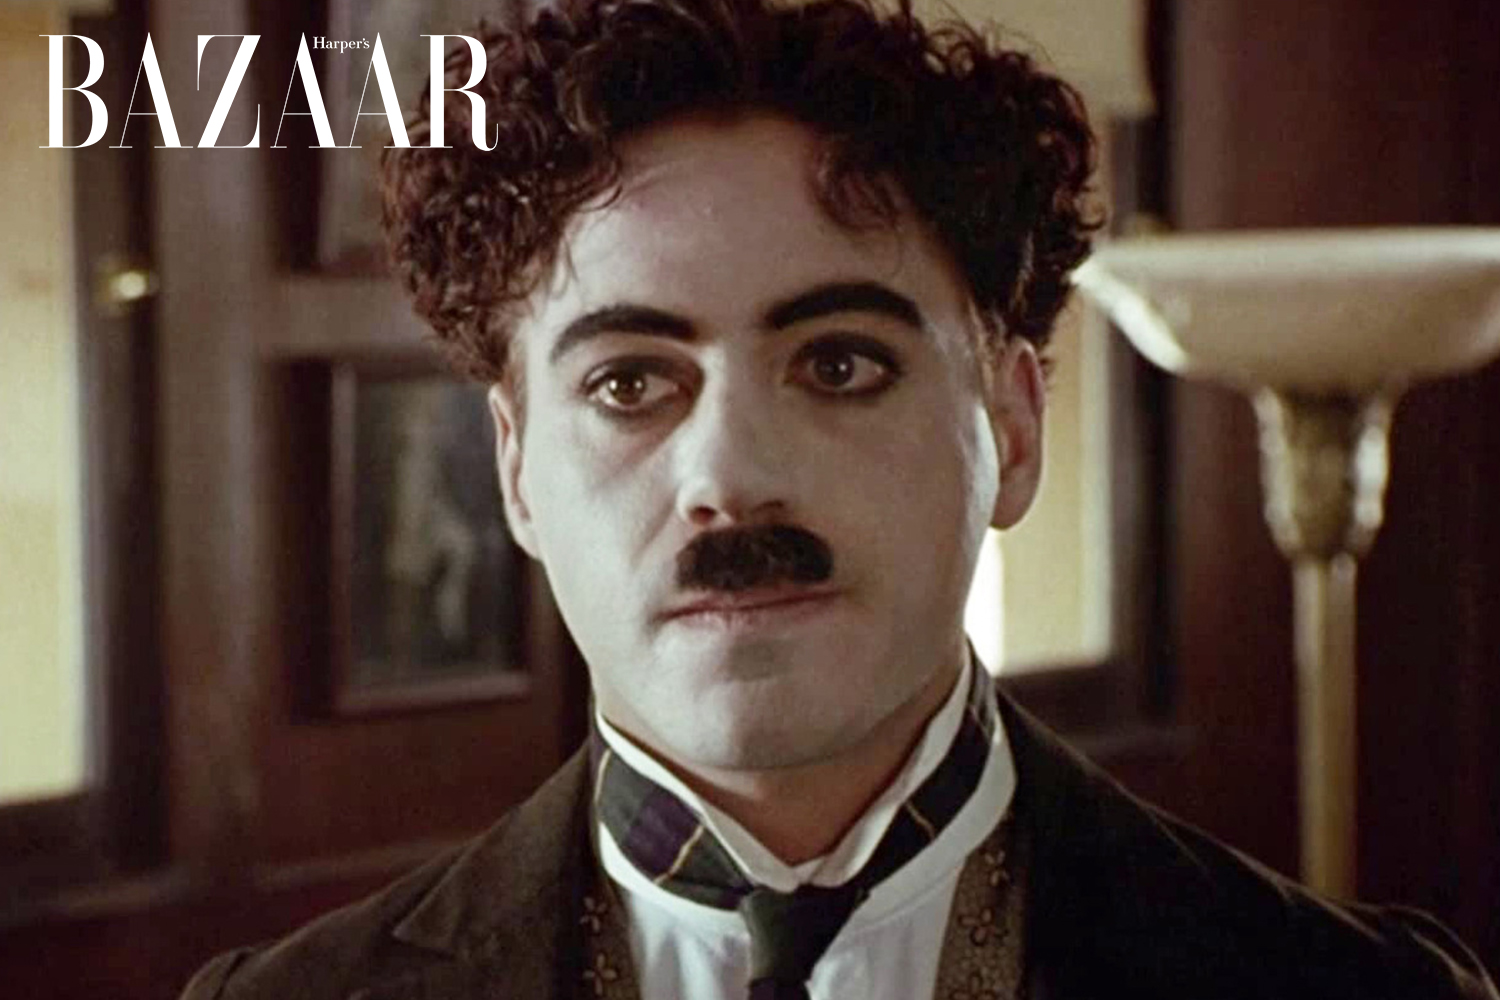 Harper's Bazaar_Robert Downey Jr trong phim Oppenheimer_08